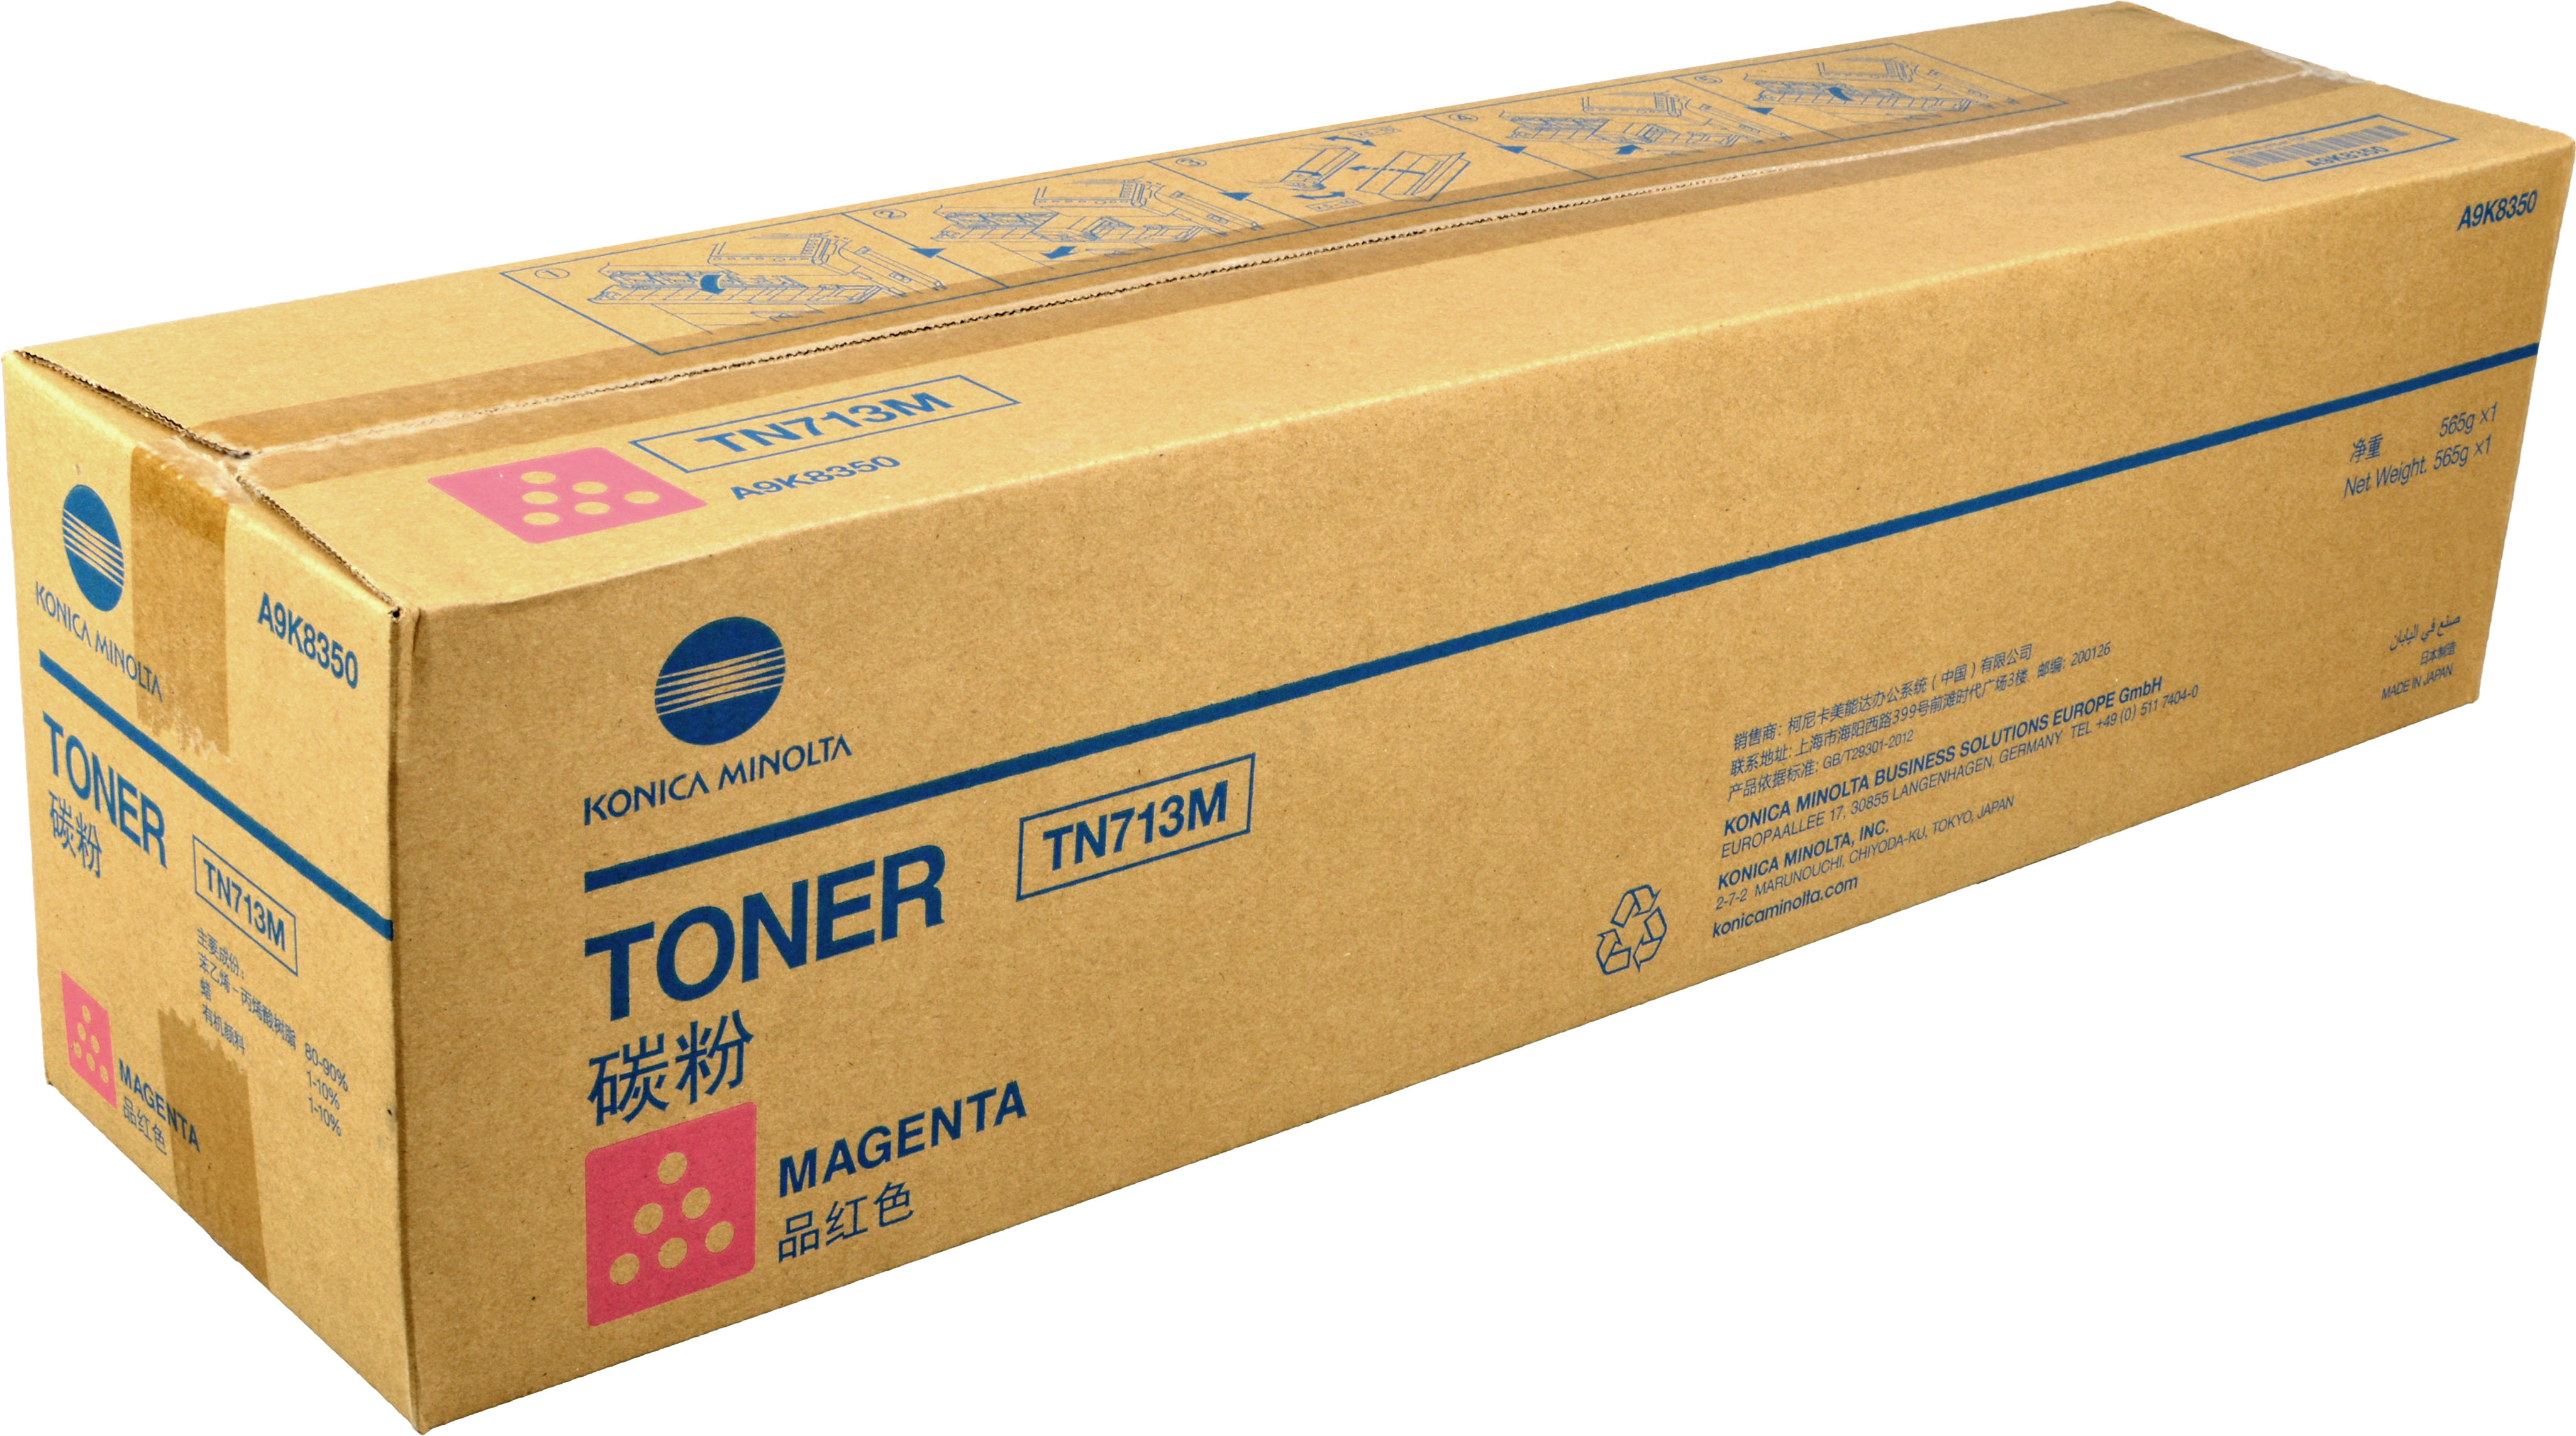 Konica Minolta Toner TN-713M  A9K8350  magenta